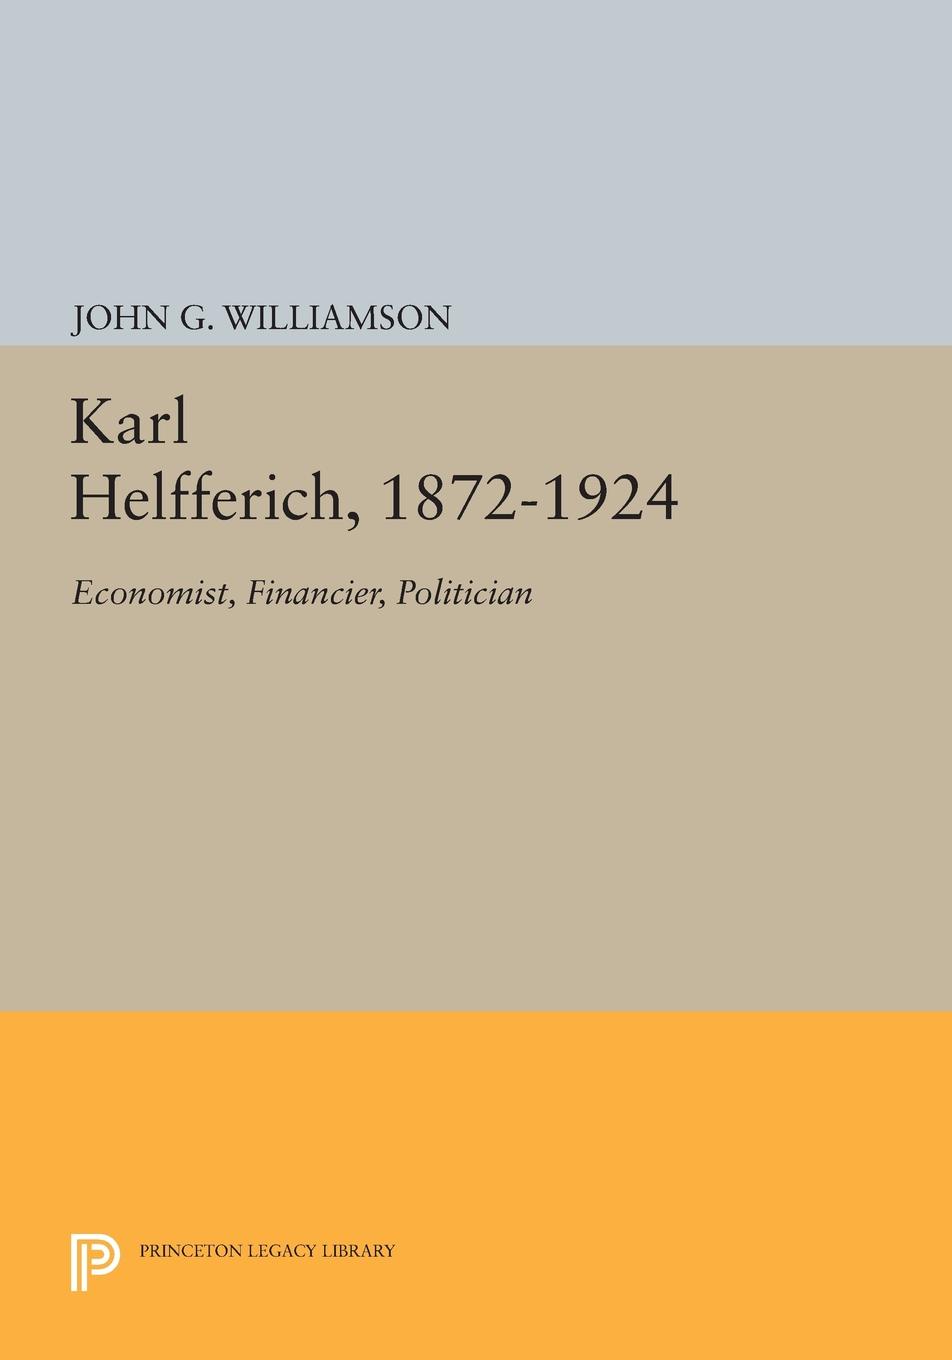 Karl Helfferich, 1872-1924. Economist, Financier, Politician